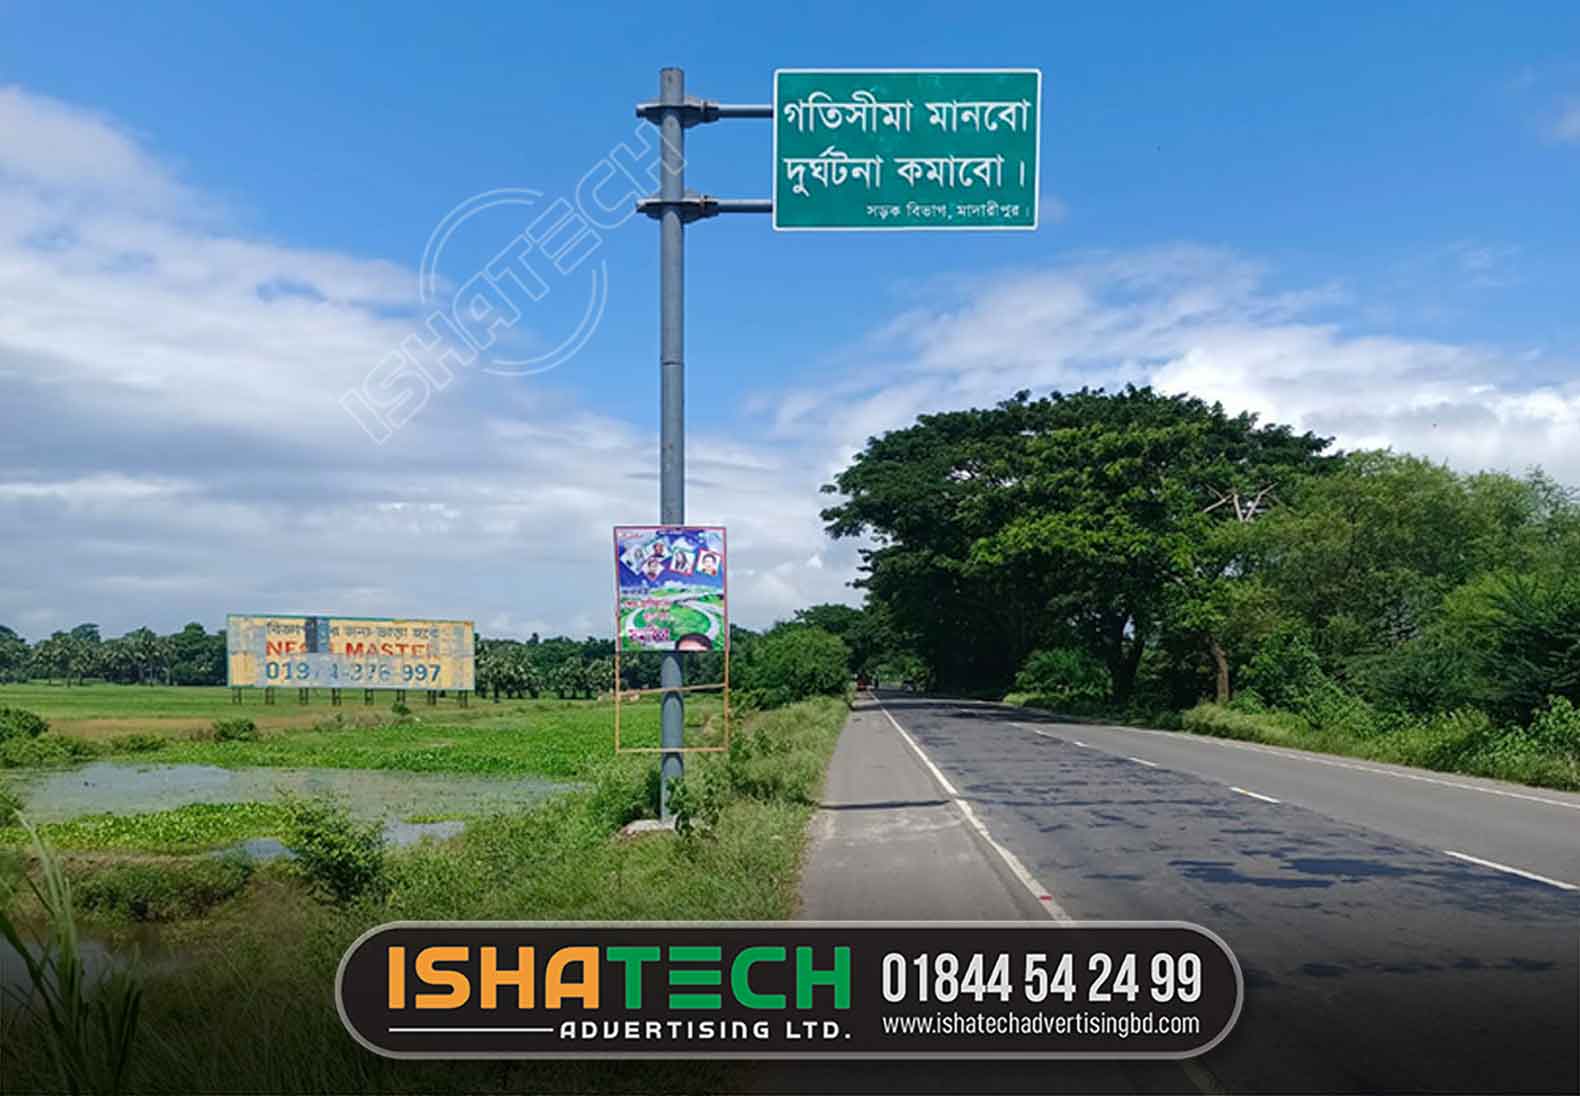 traffic signs bangladesh pdf. traffic signs brta pdf. bangladesh road sign manual bangla. traffic signs in bangladesh. brta road sign. how many traffic signs in bangladesh. traffic signs pdf free download. traffic sign in bangladesh pdf bangla.